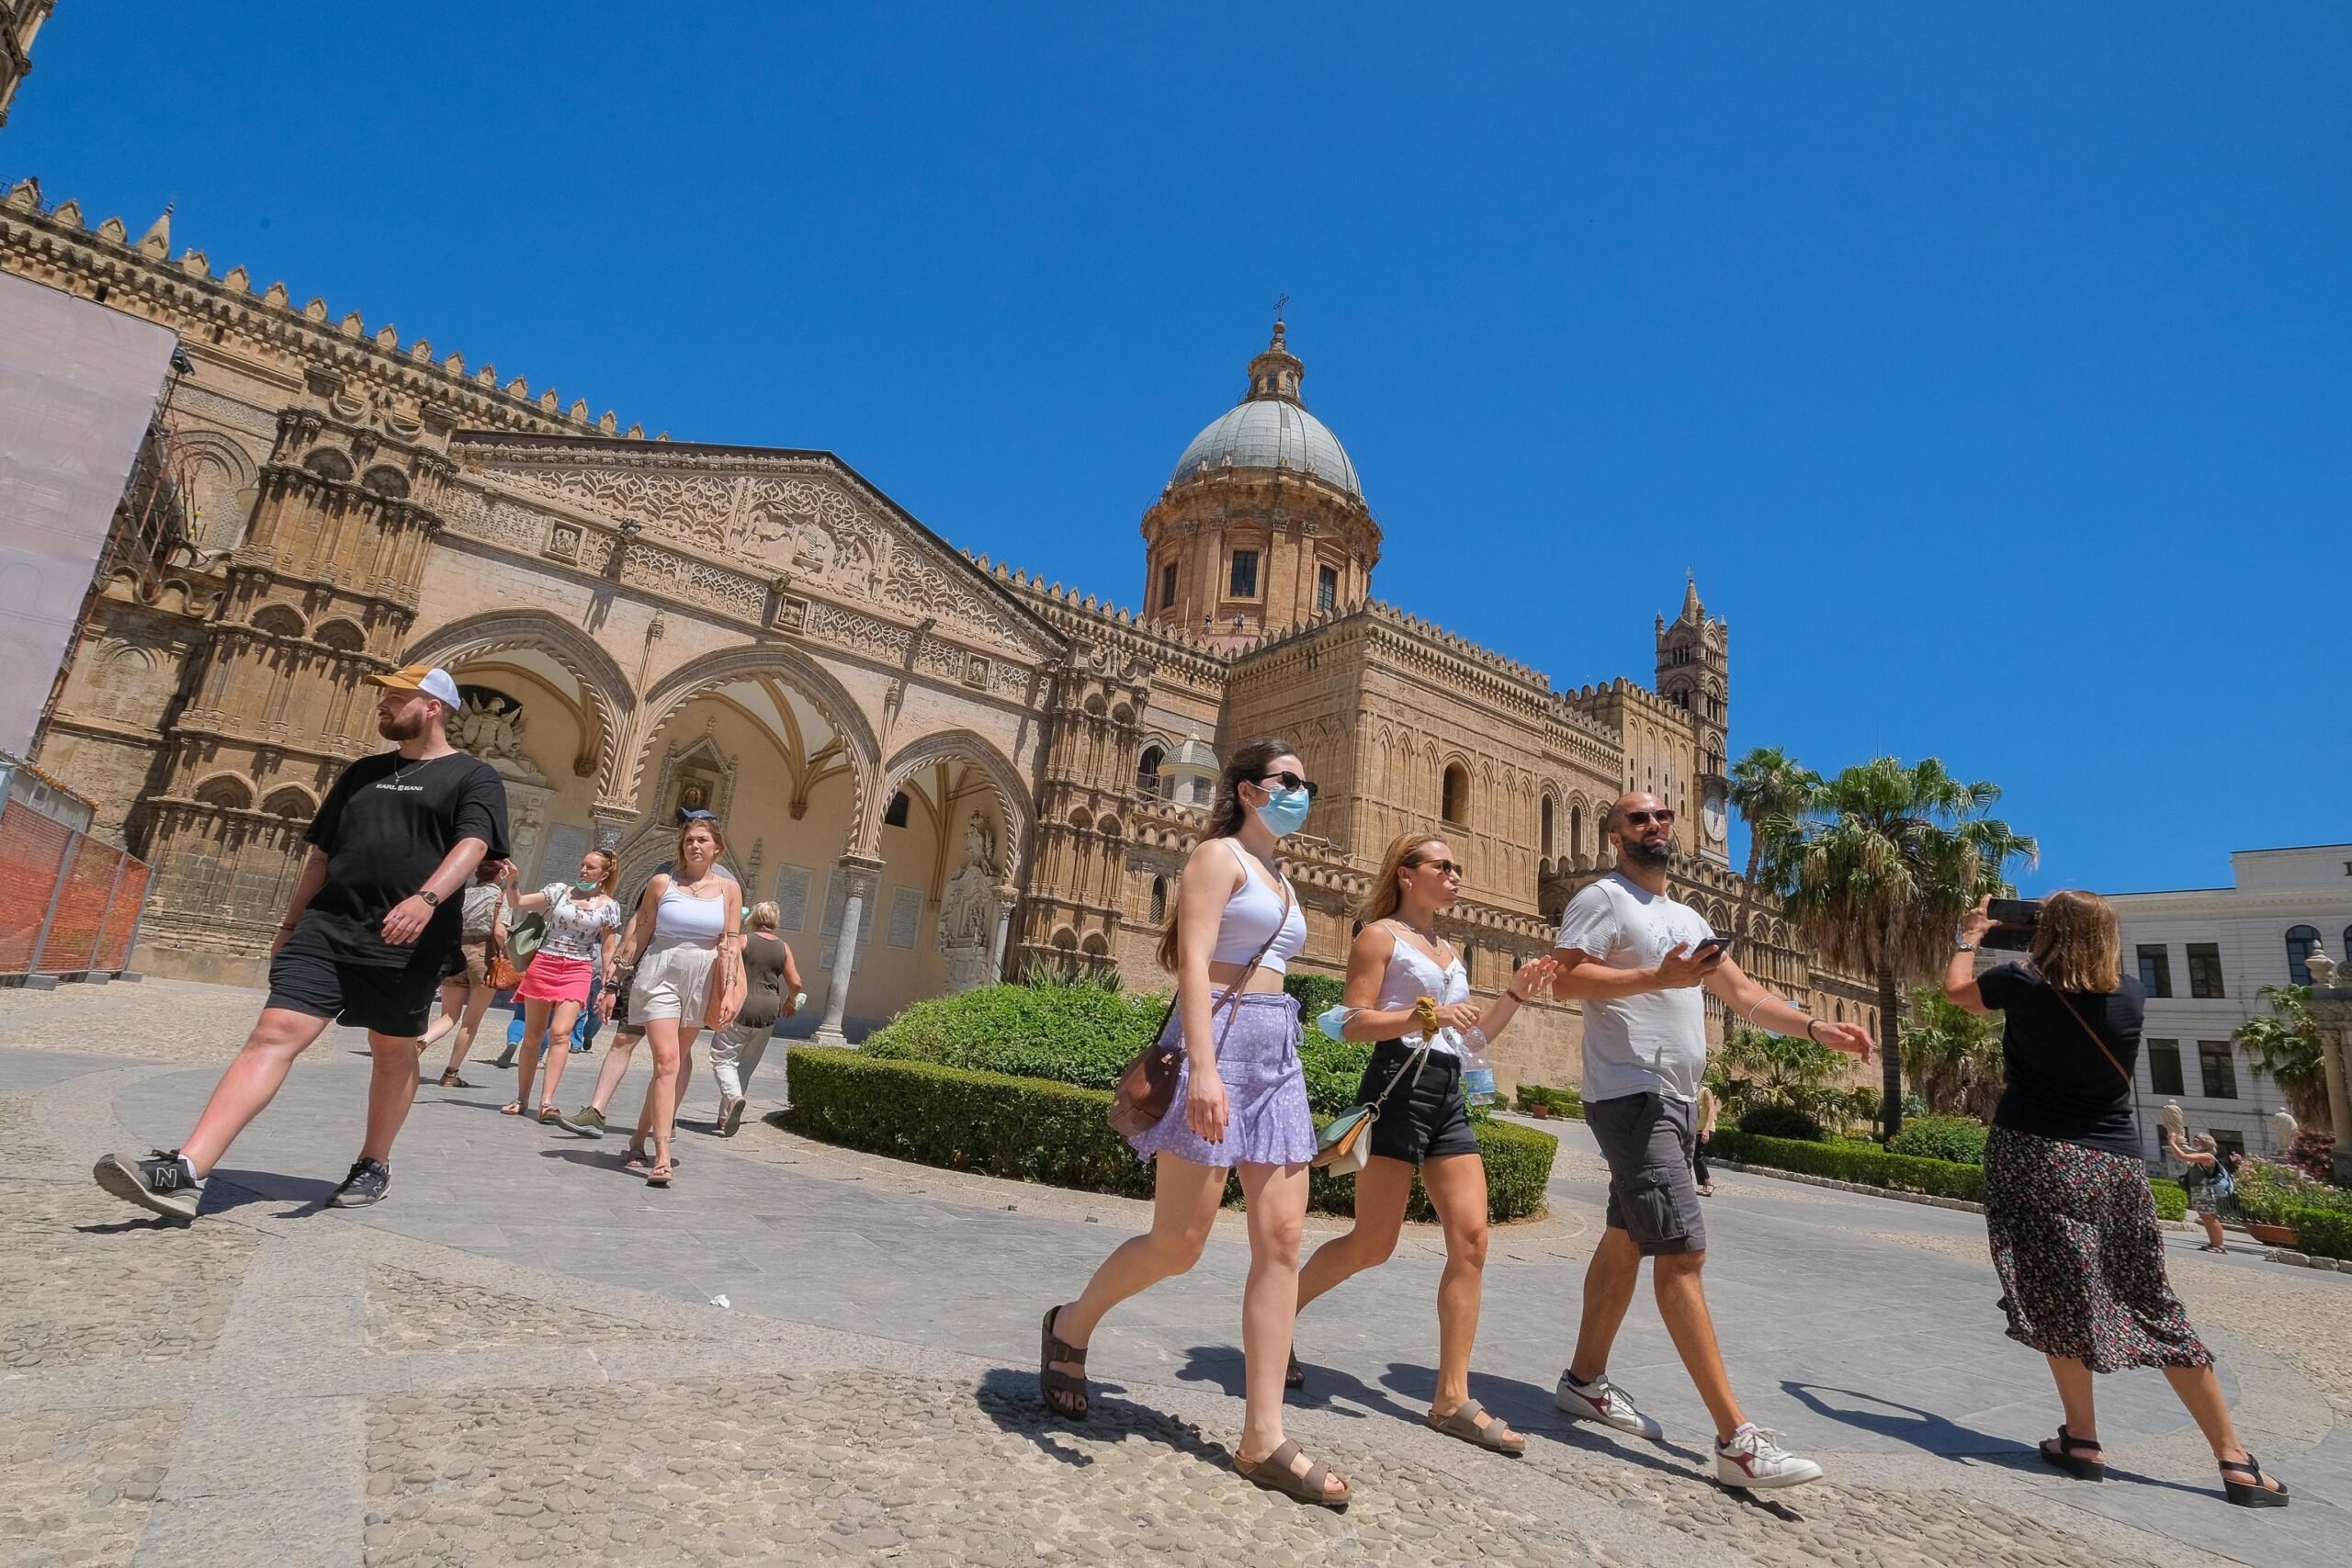 Toeristen in het historische centrum van Palermo tijdens de coronapandemie. Foto: EPA/Igor Petyx